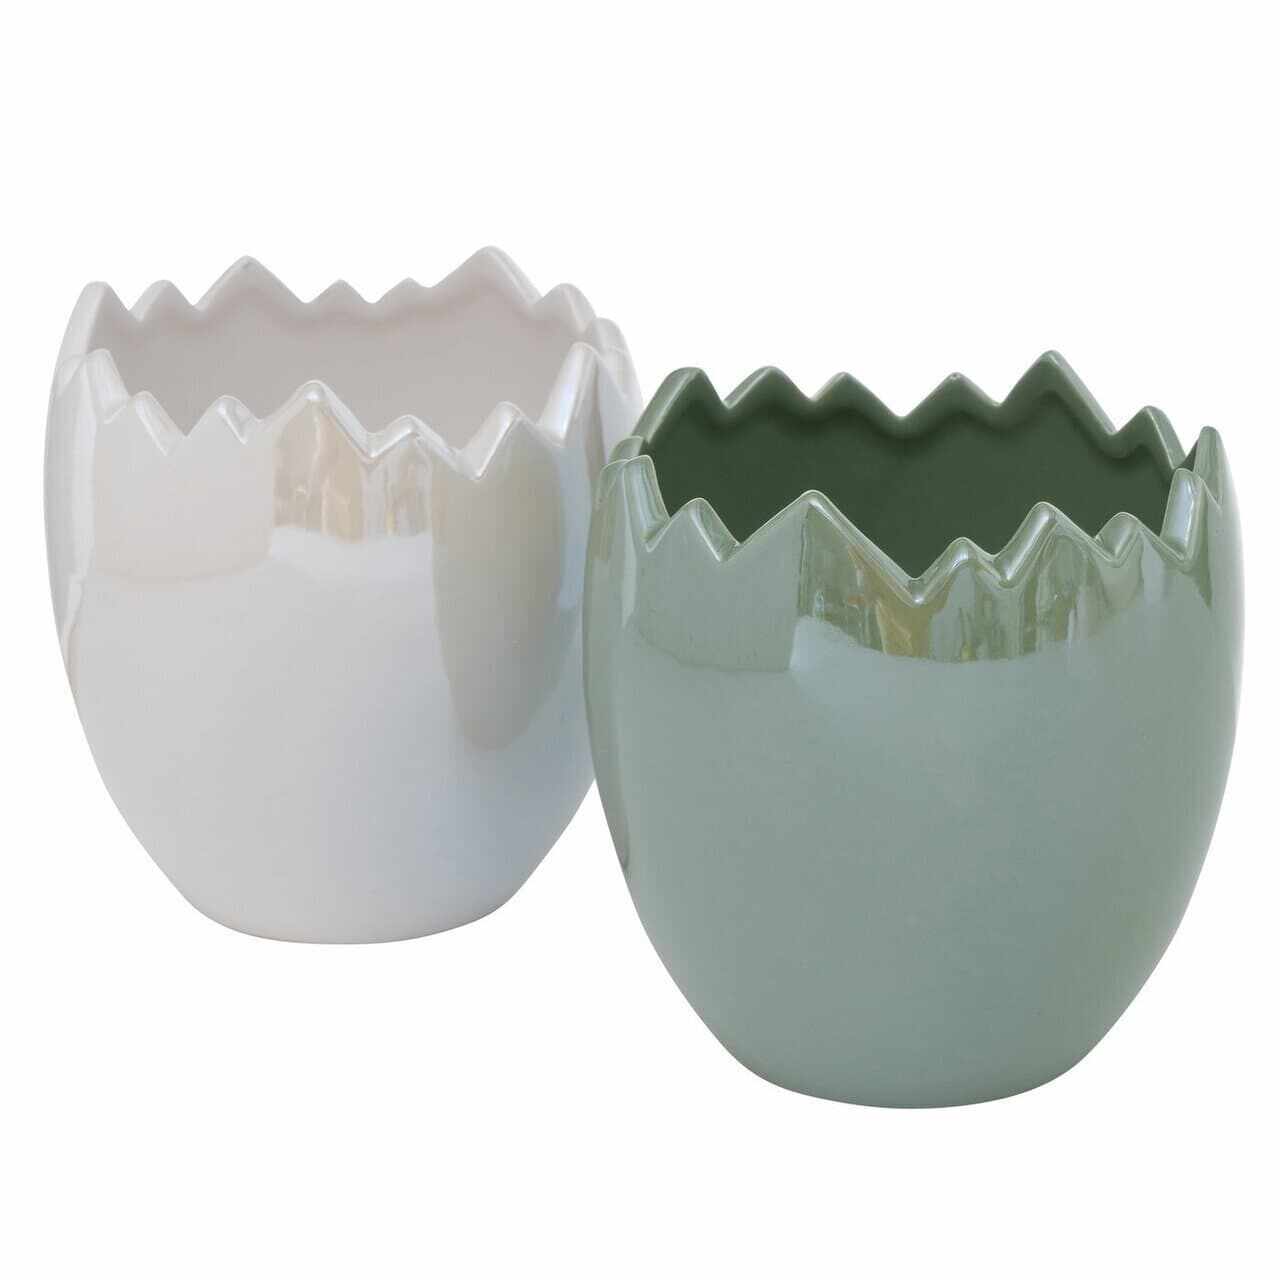 Ghiveci din ceramica Enya Verde / Alb, Modele Asortate, Ø12xH12 cm